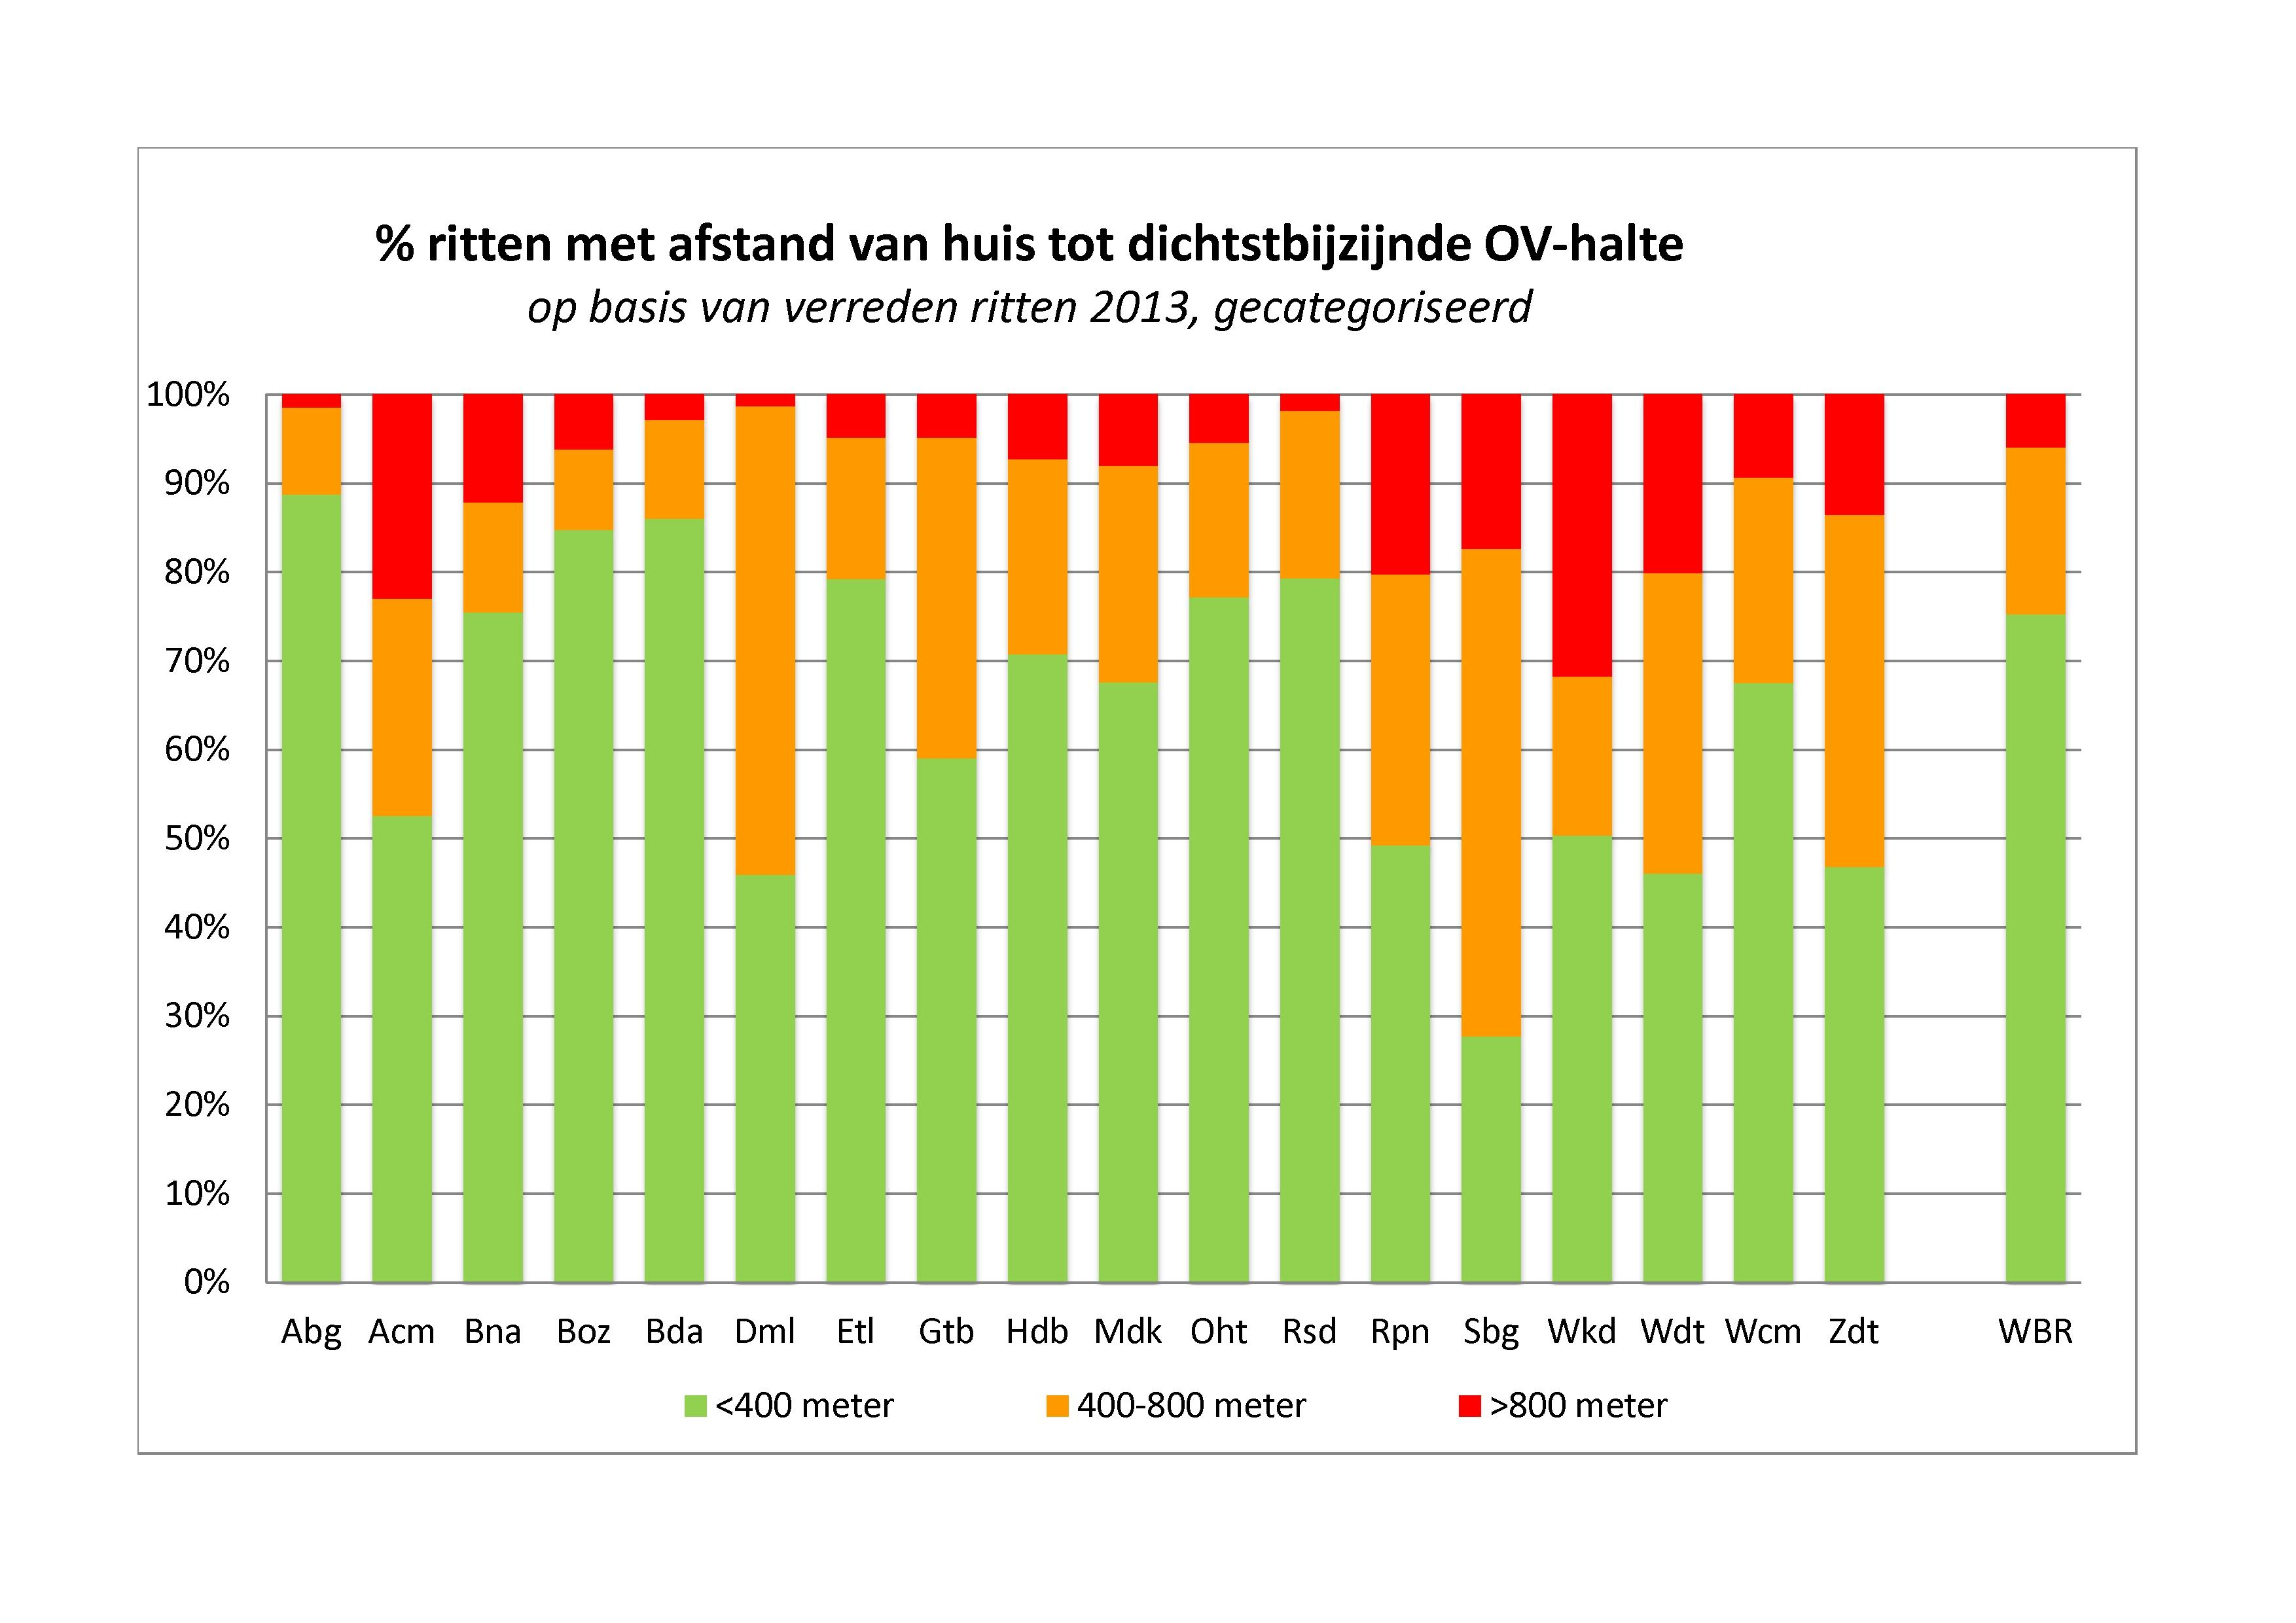 % ritten met afstand van huis dichtstbijzijnde OV-halte op basis van verreden ritten 2013, gecategoriseerd Ĵ.